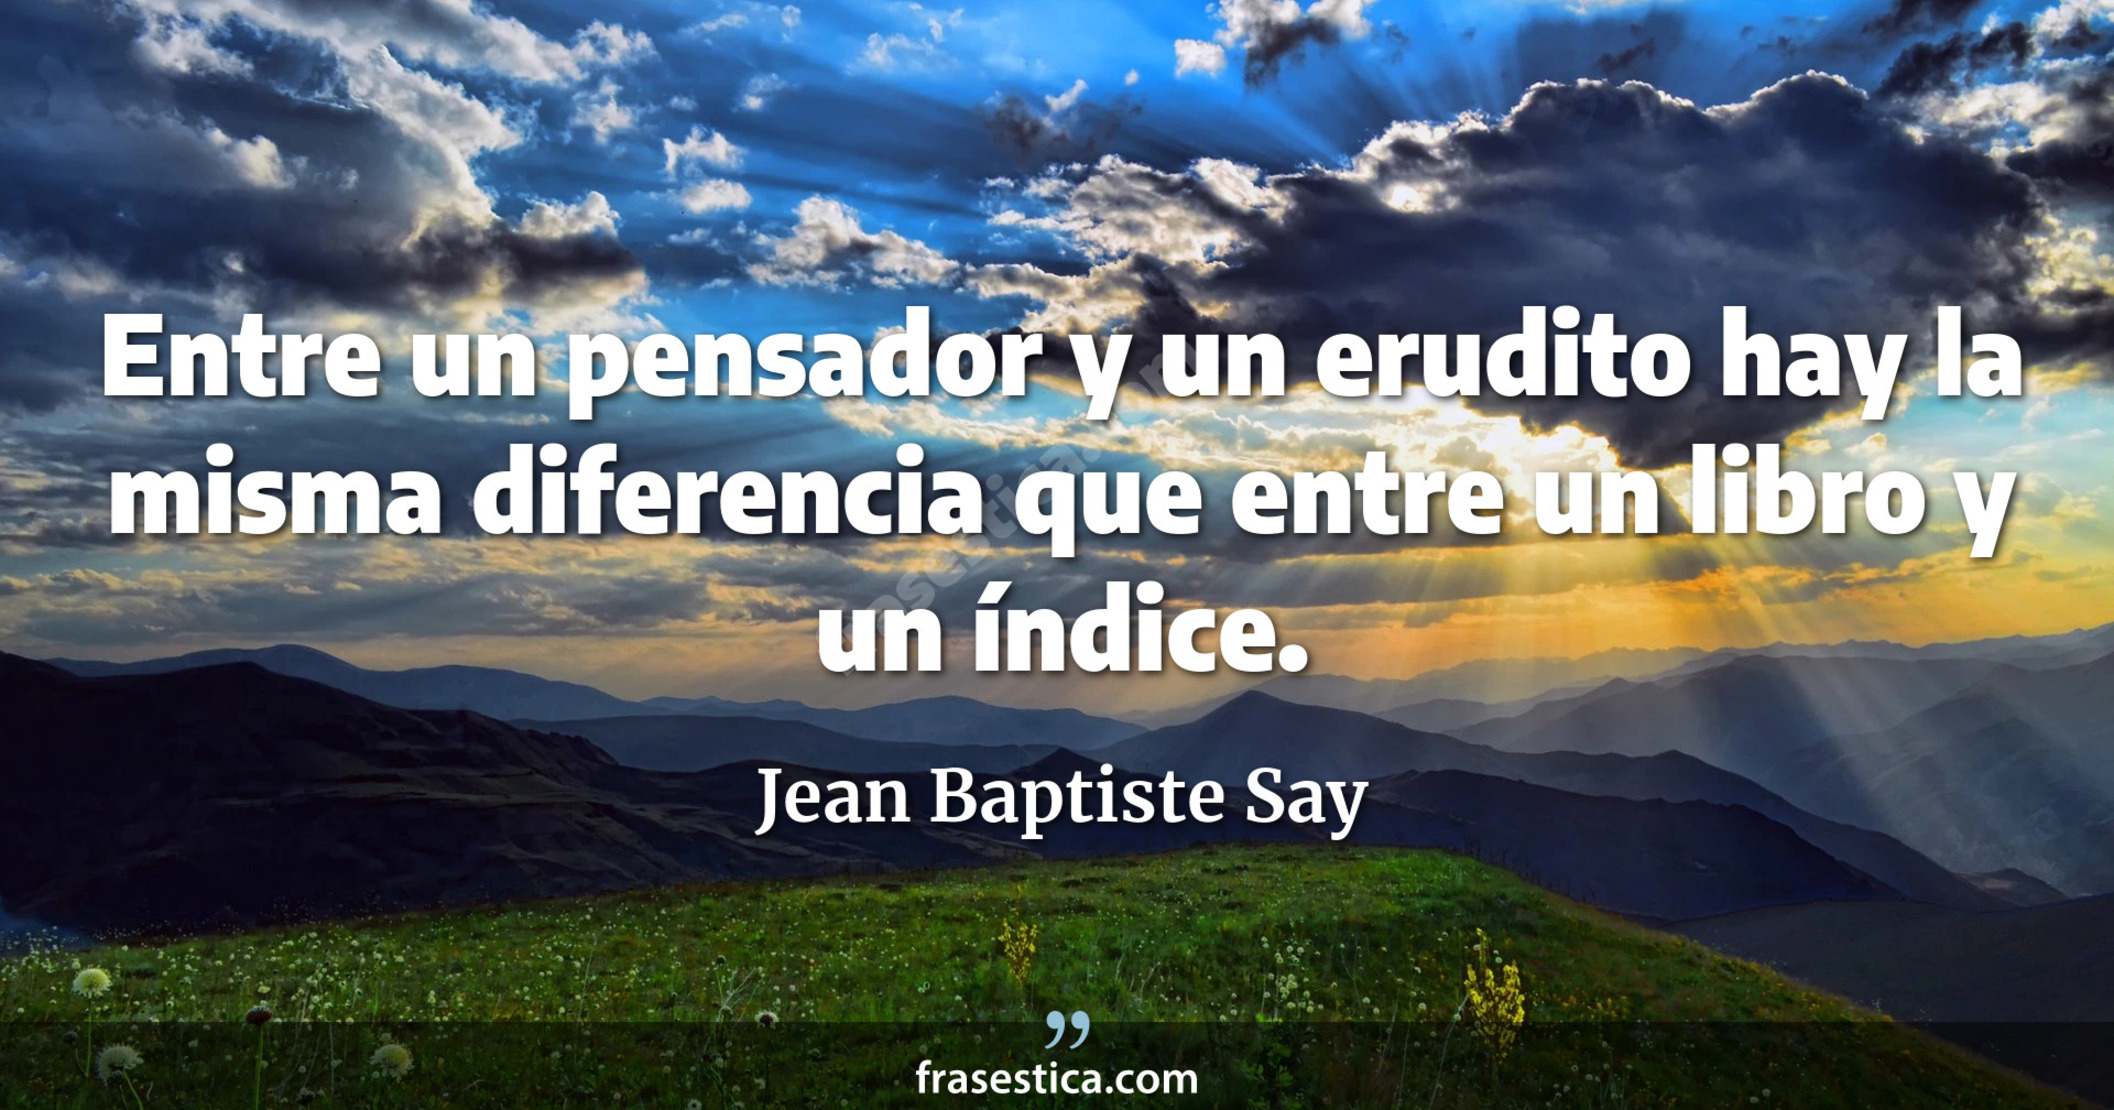 Entre un pensador y un erudito hay la misma diferencia que entre un libro y un índice. - Jean Baptiste Say